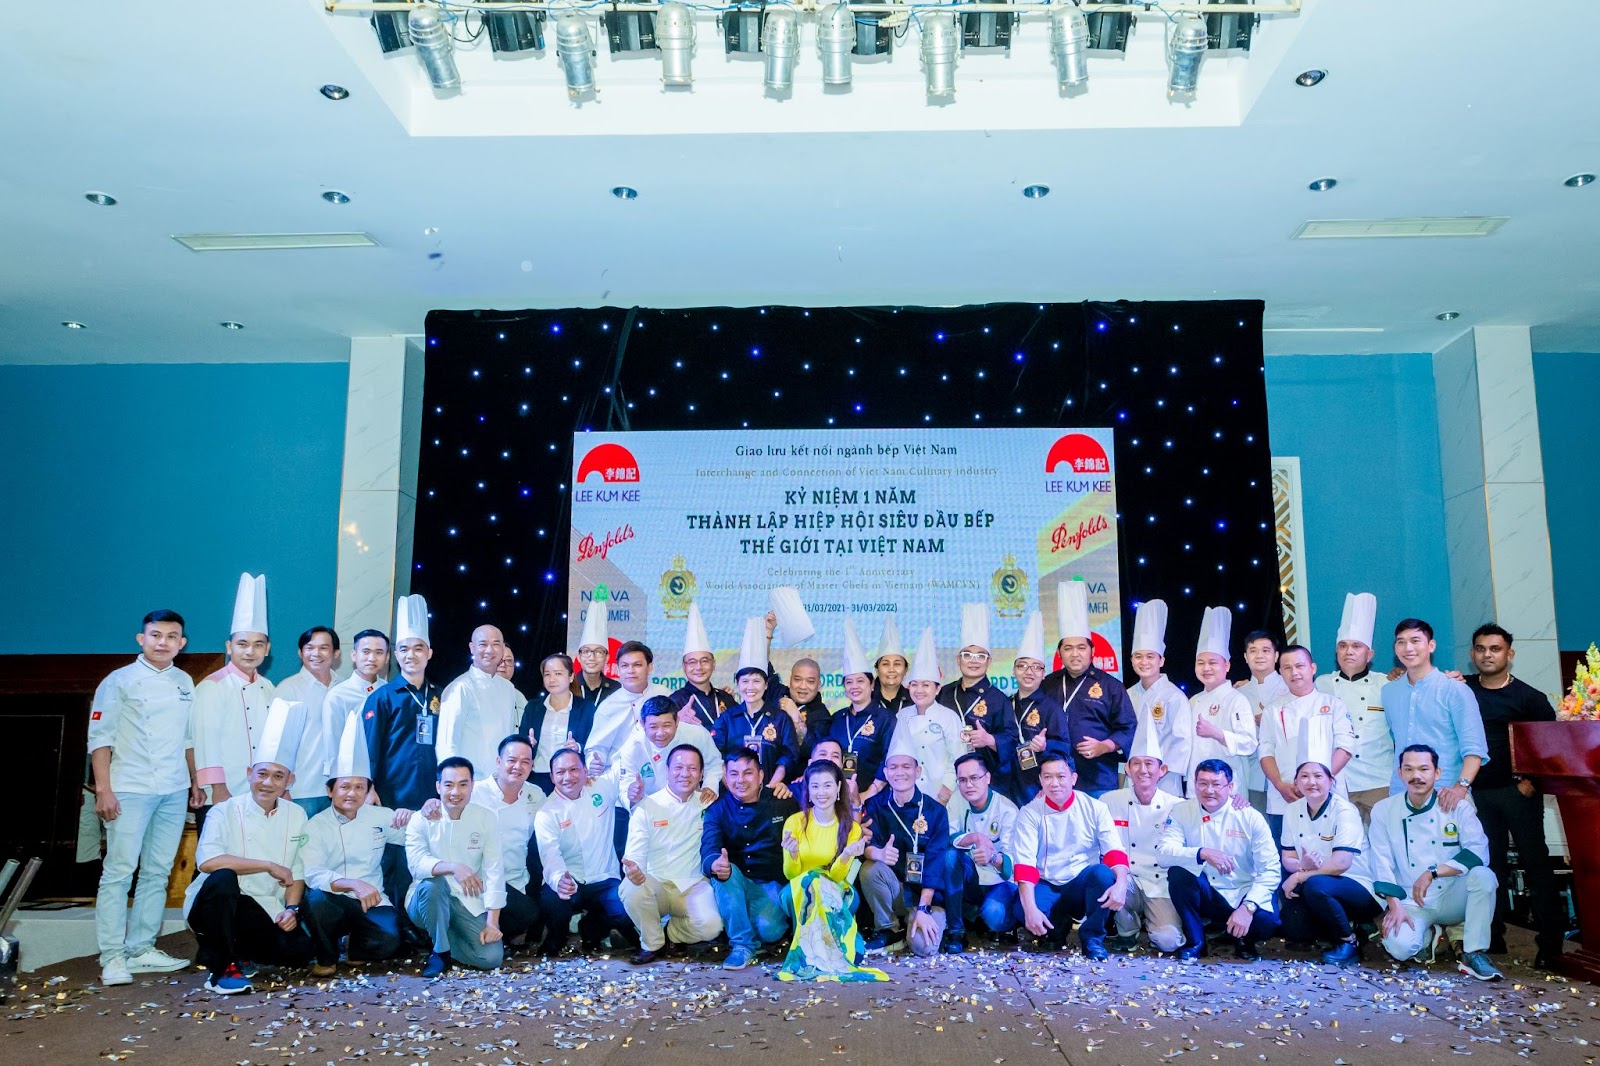 Hiệp hội Siêu Đầu bếp Thế giới tại Việt Nam quảng bá ẩm thực nước nhà ra thế giới - 1